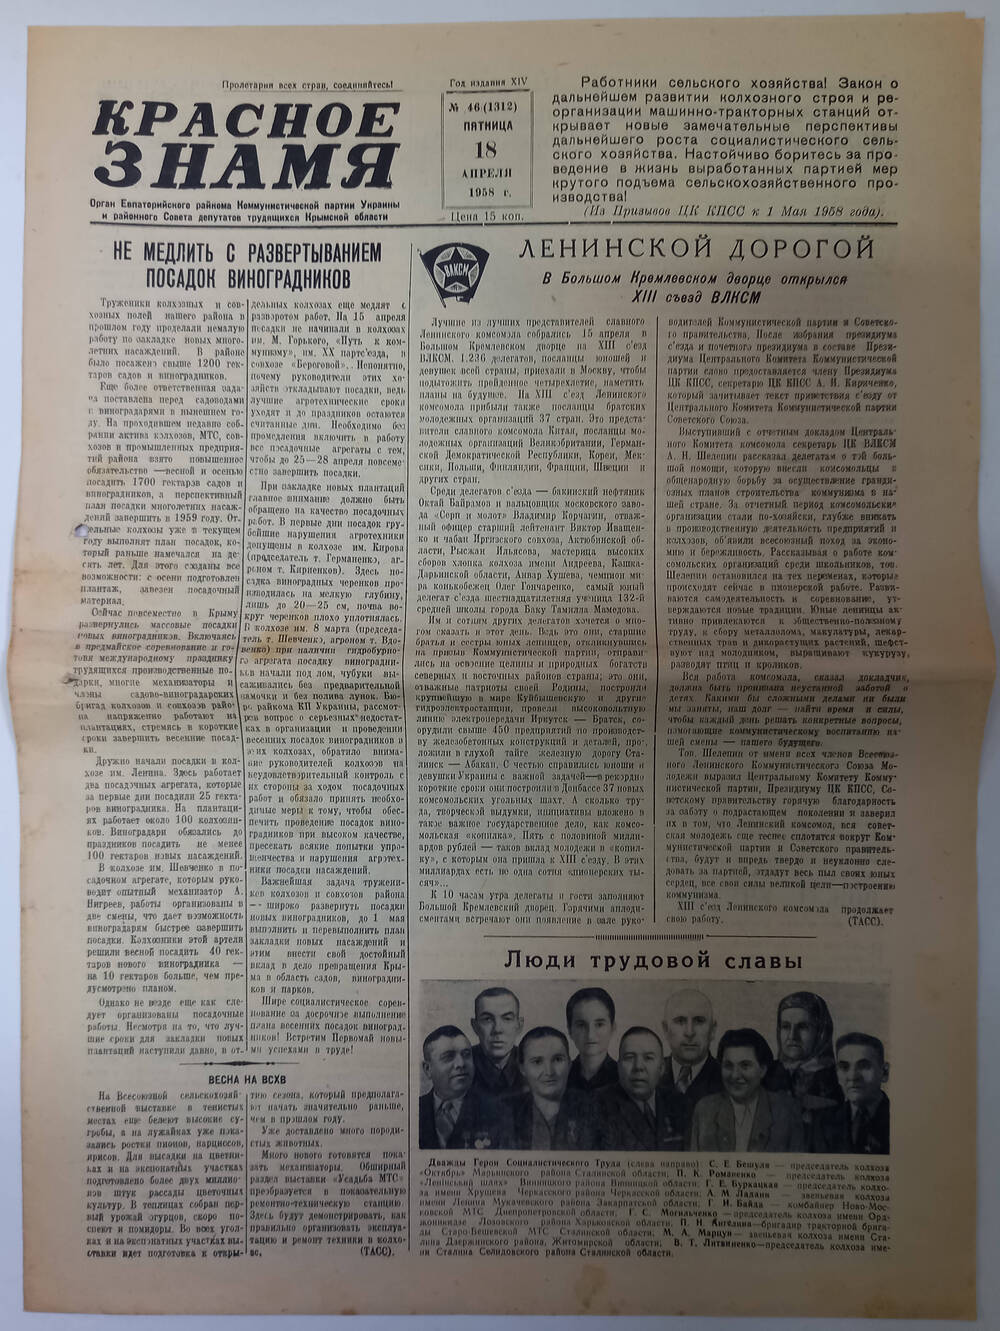 Газета Красное знамя №46(1312) от 18.04.1958 г.